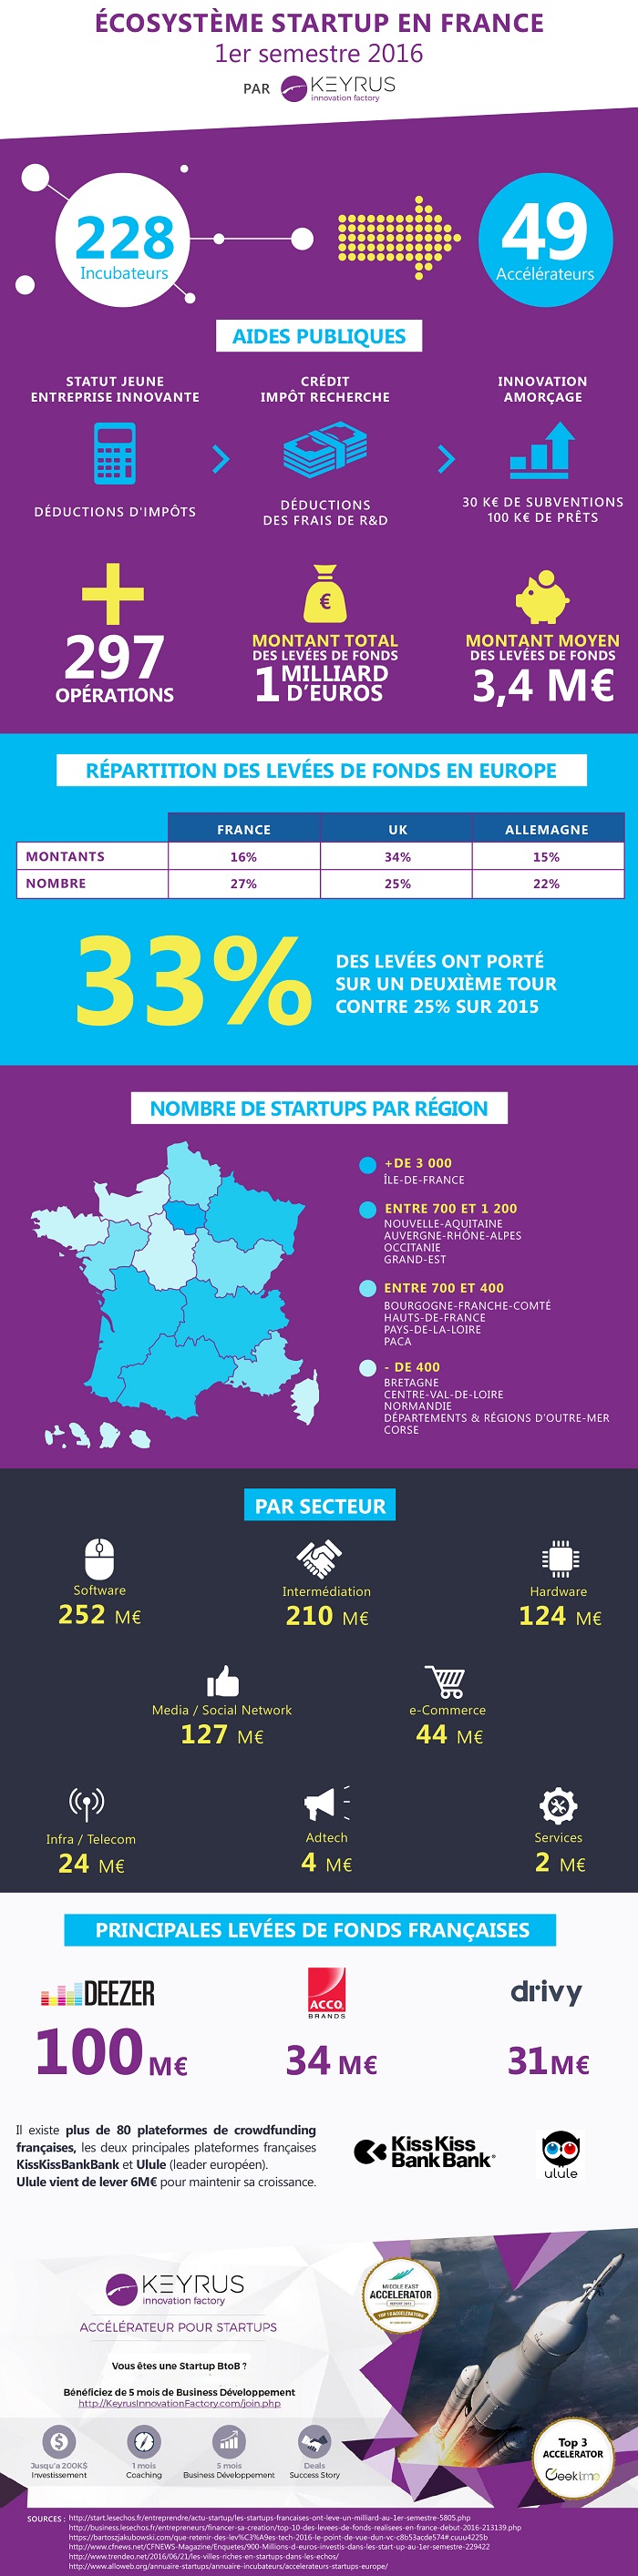 Infographie 'écosystème des start-up en France au 1er semestre 2016